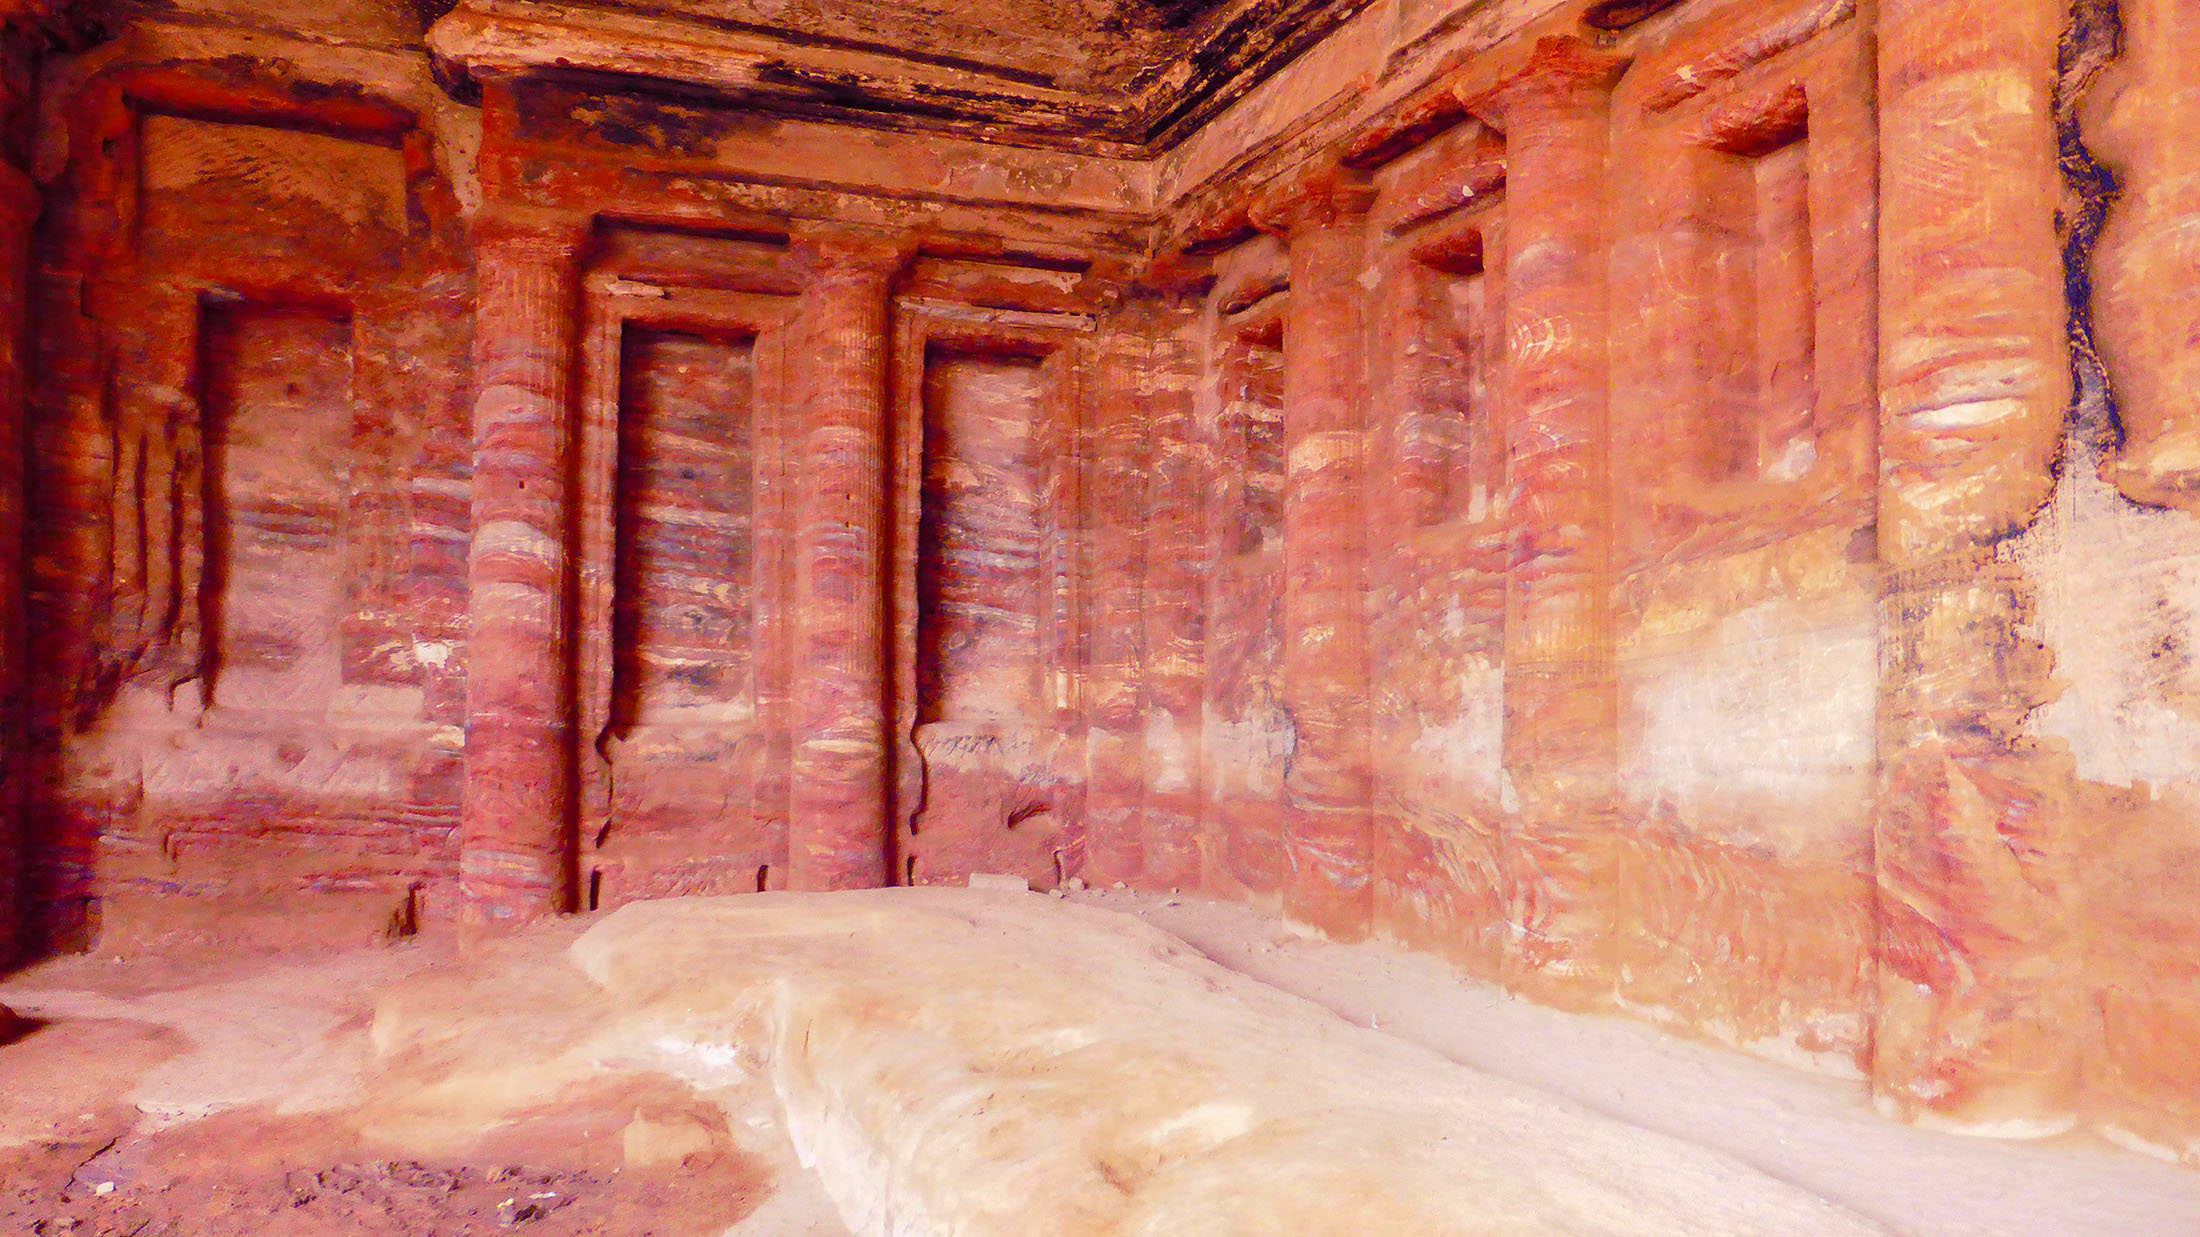 Roman Solider Renaissance Tombs in Petra Jordan